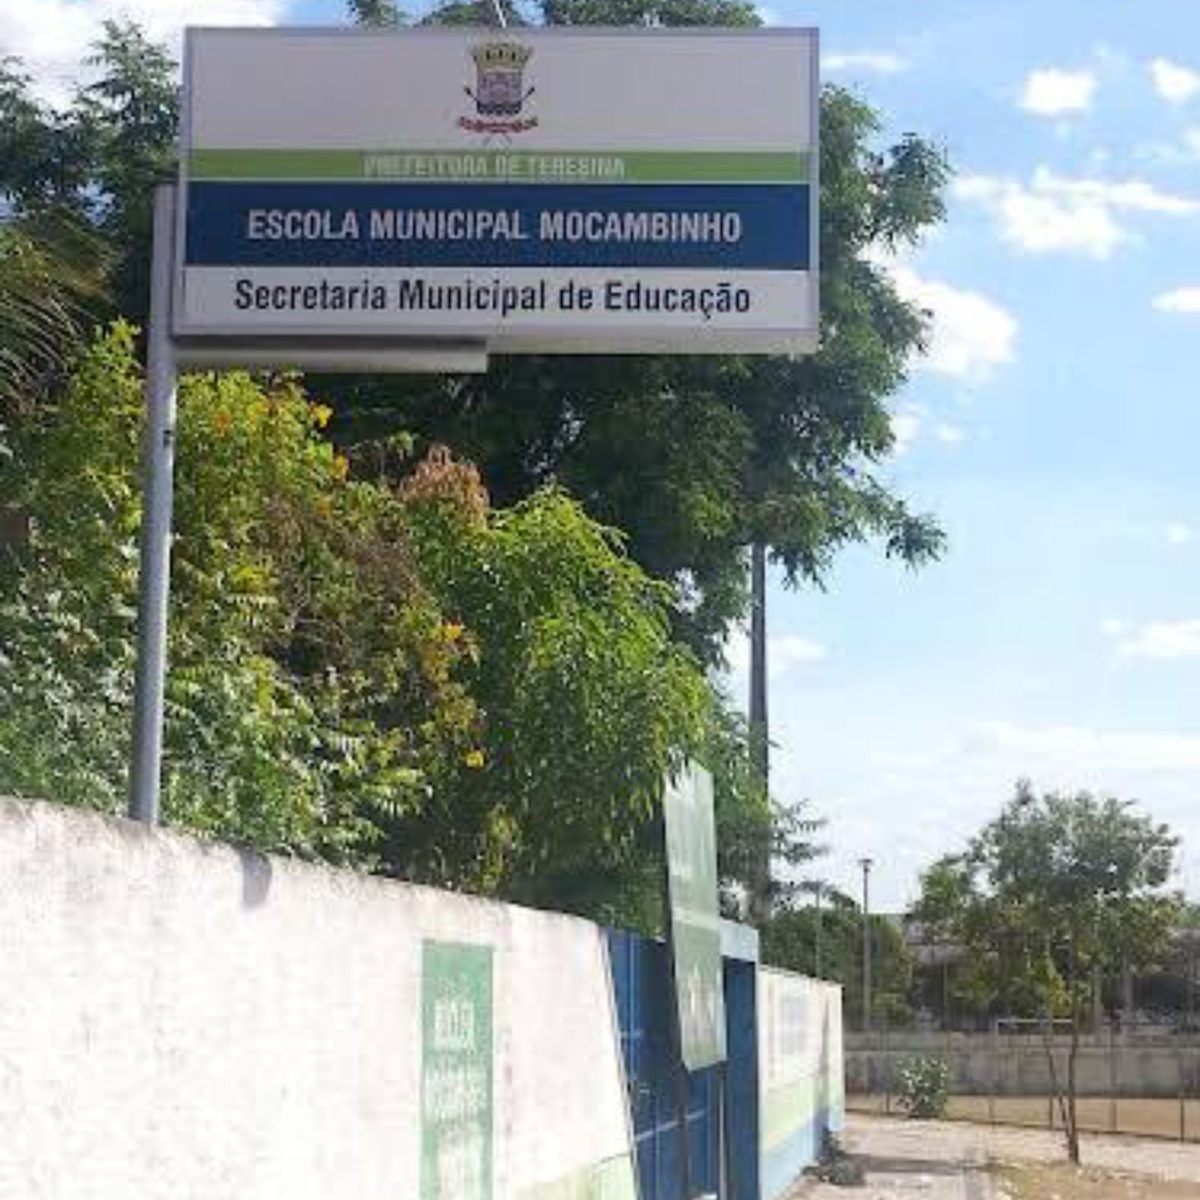 Escola Municipal do Mocambinho.